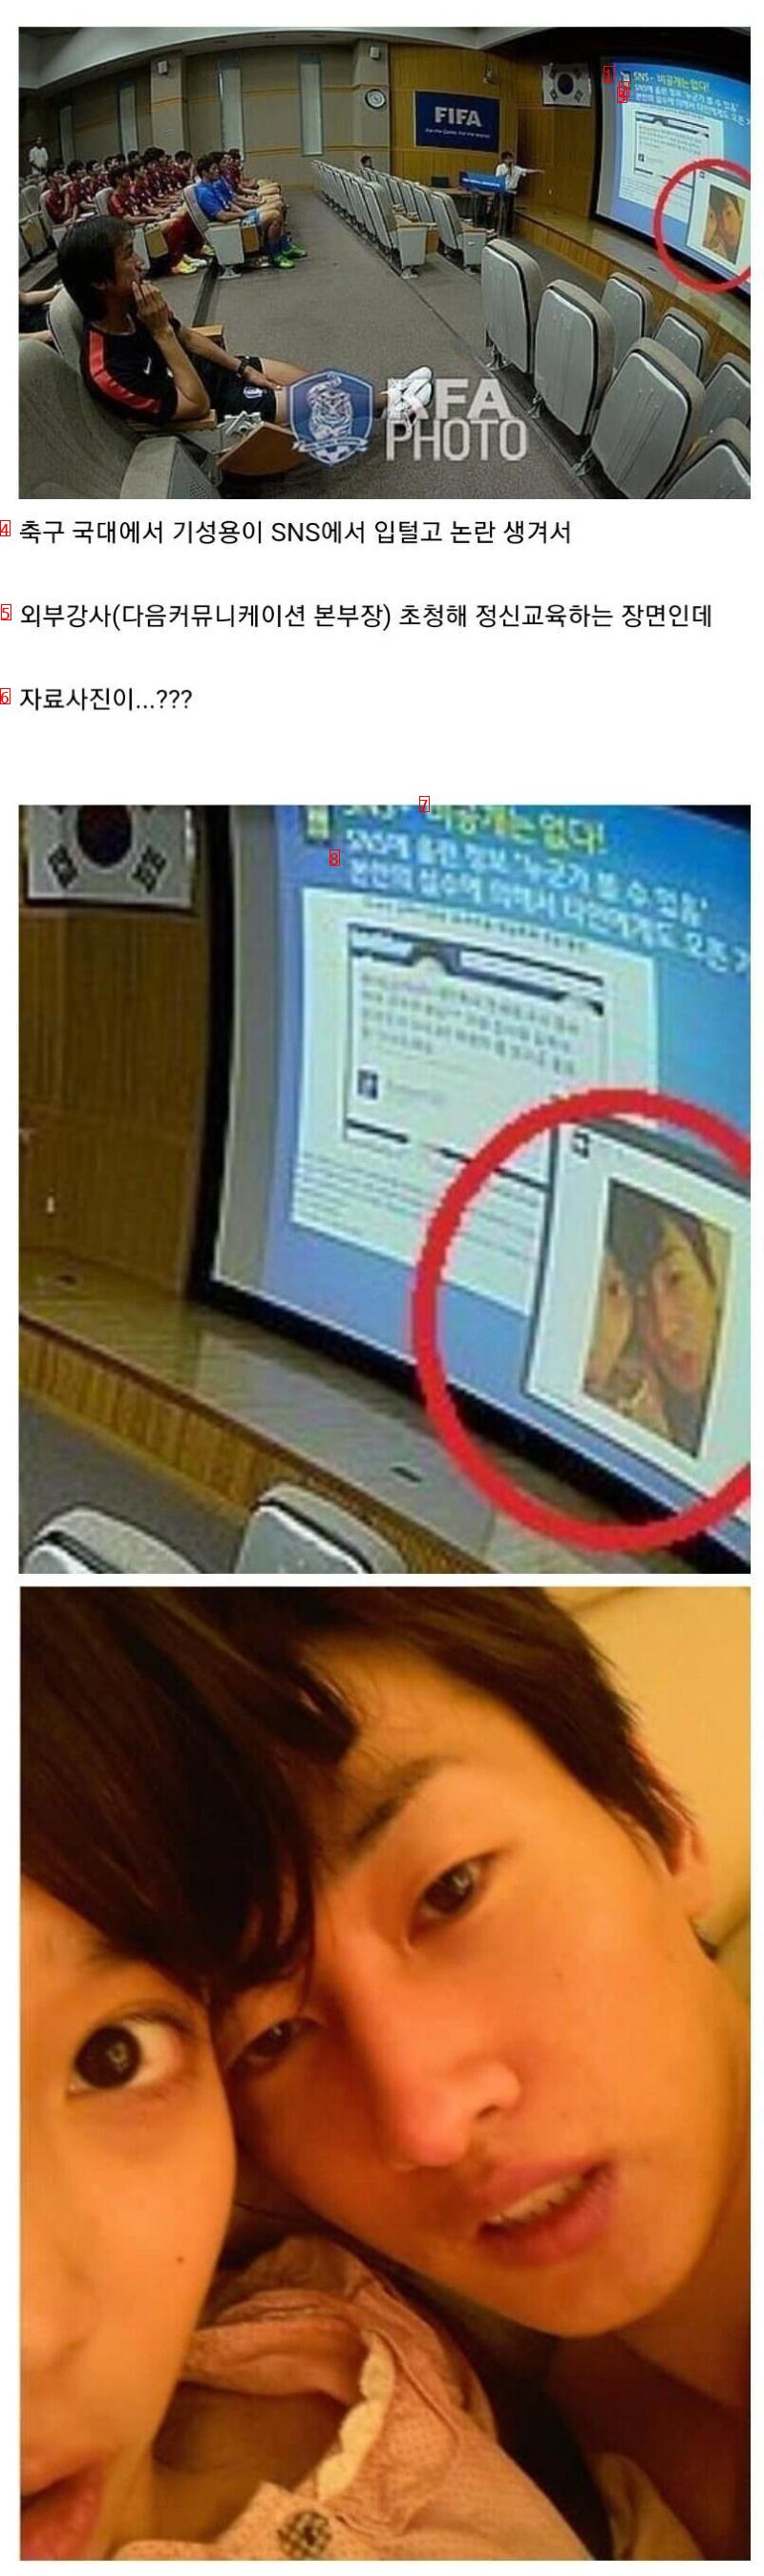 아이돌 스캔들 사진이 교보재로 쓰인 사례.....jpg